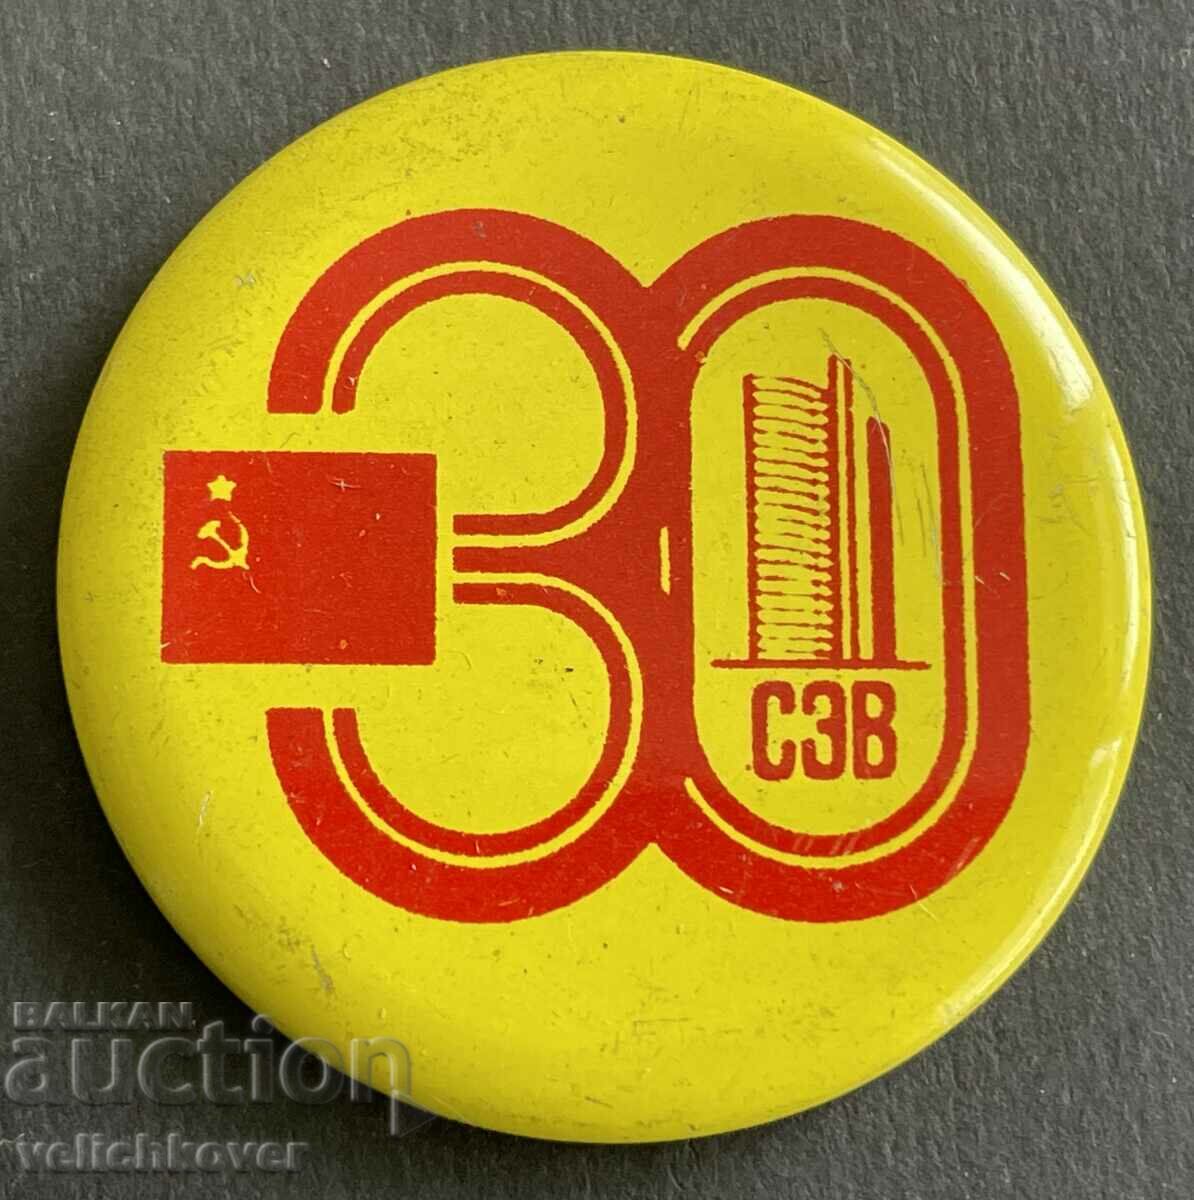 37416 Σημάδι ΕΣΣΔ 30 χρόνια. SIV Συμβούλιο για την Αμοιβαία Οικονομική Βοήθεια